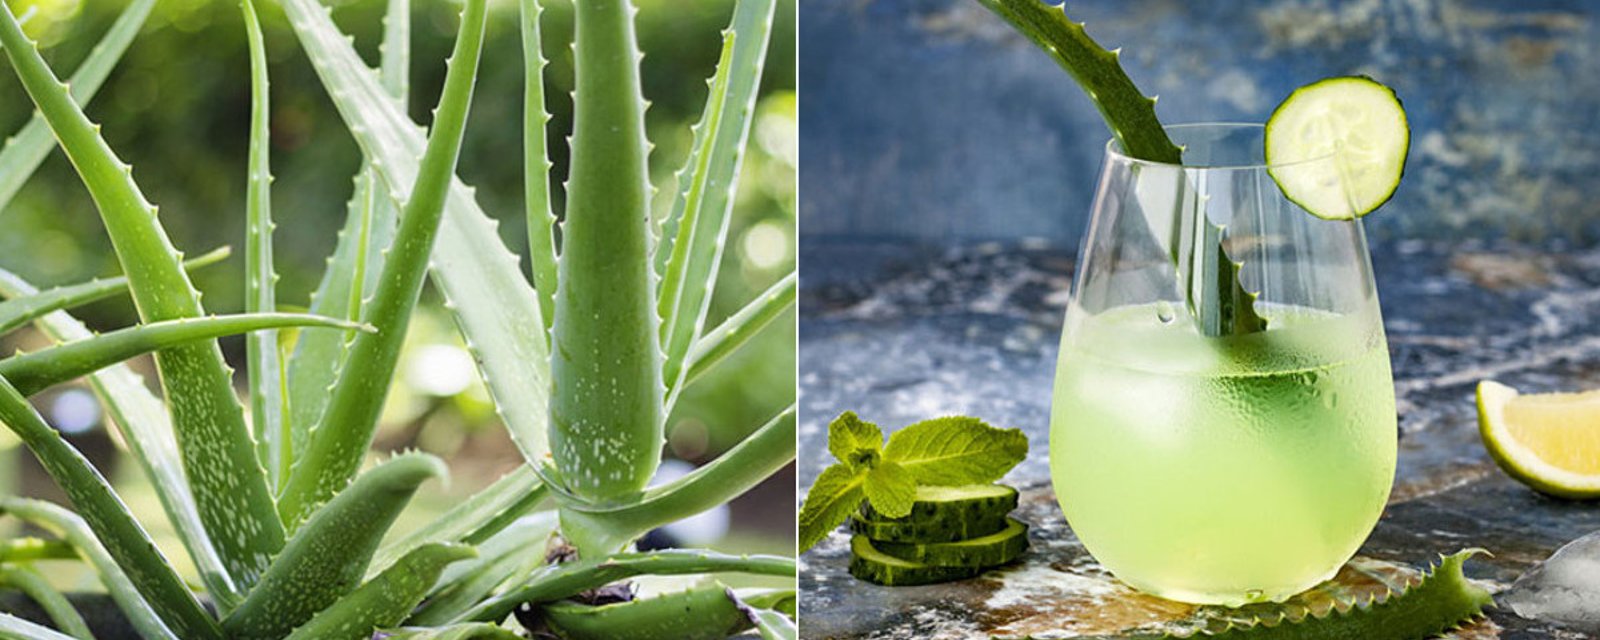 Les avantages de la plante d'Aloes Vera pour le corps humain et notre santé! 